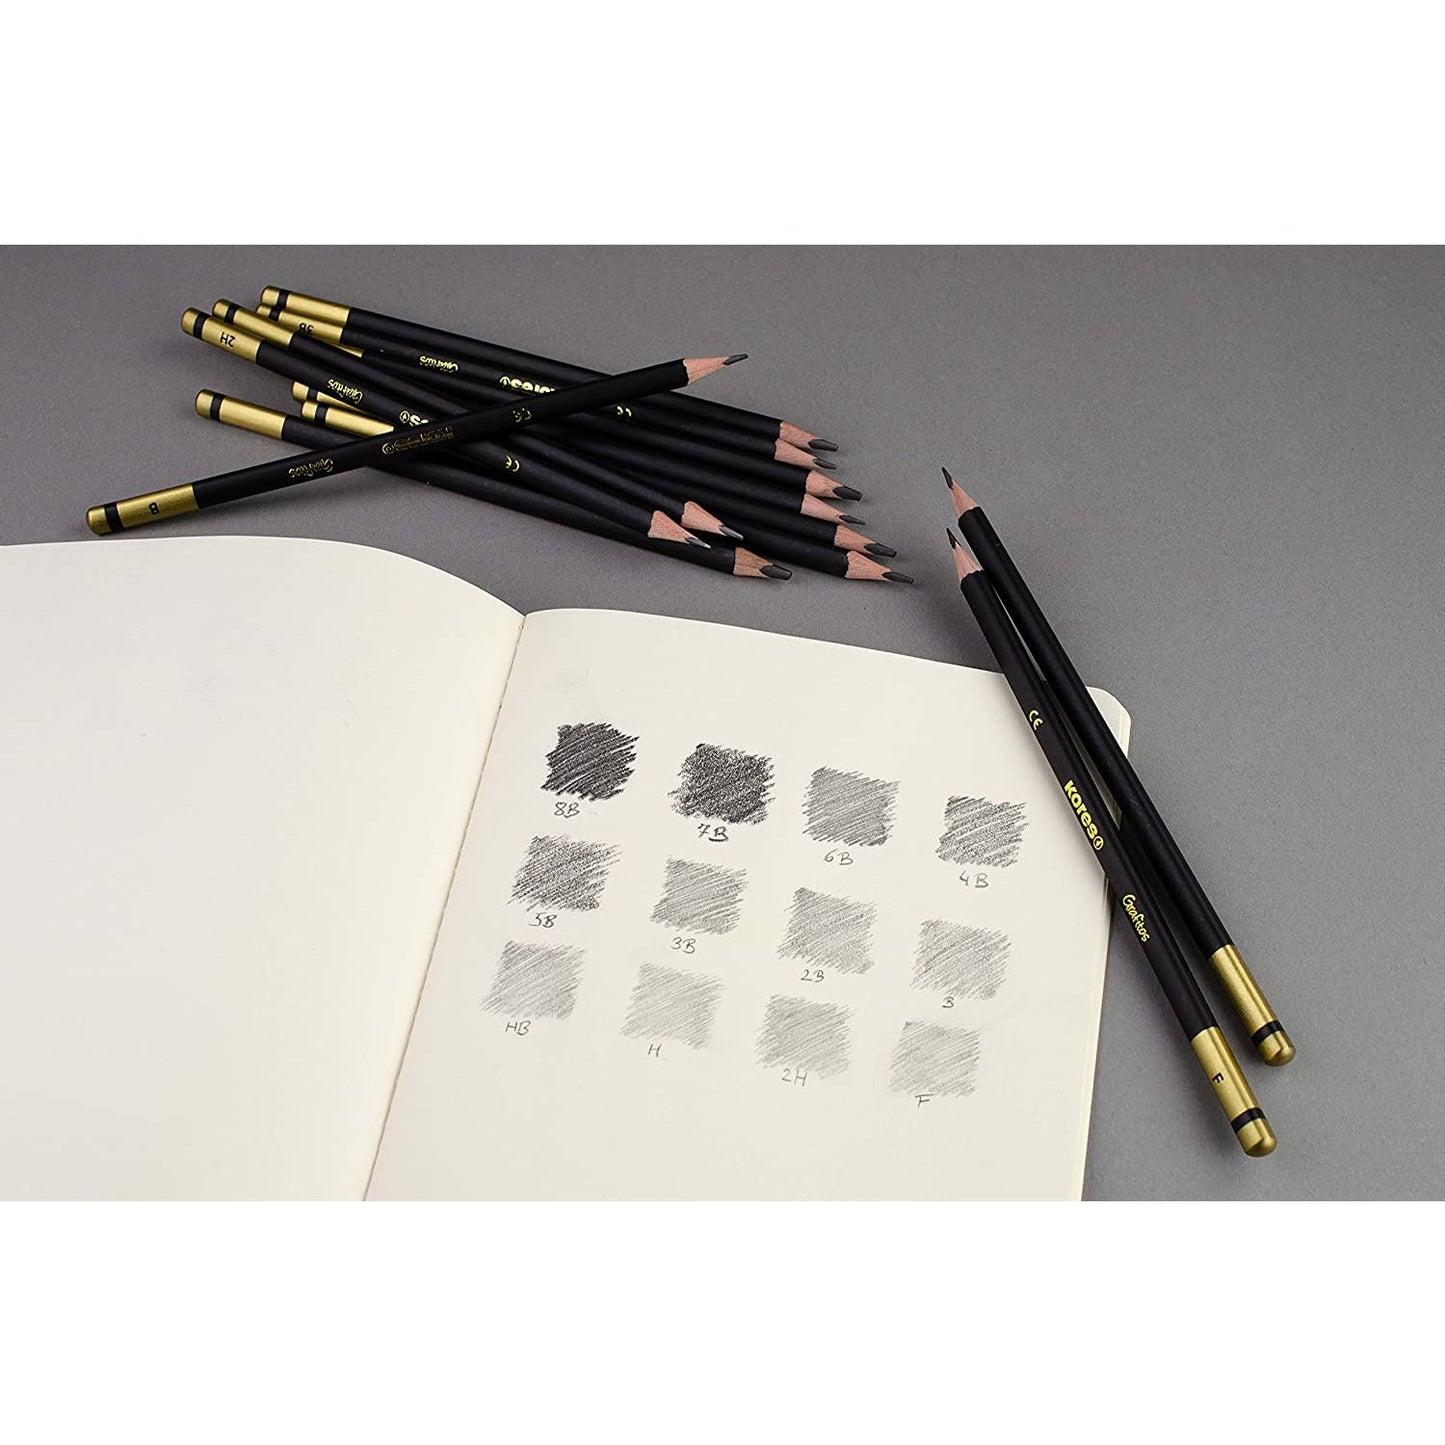 NEW Kores Grafitos 8B-2H Graphite Pencils Set - Metal Box